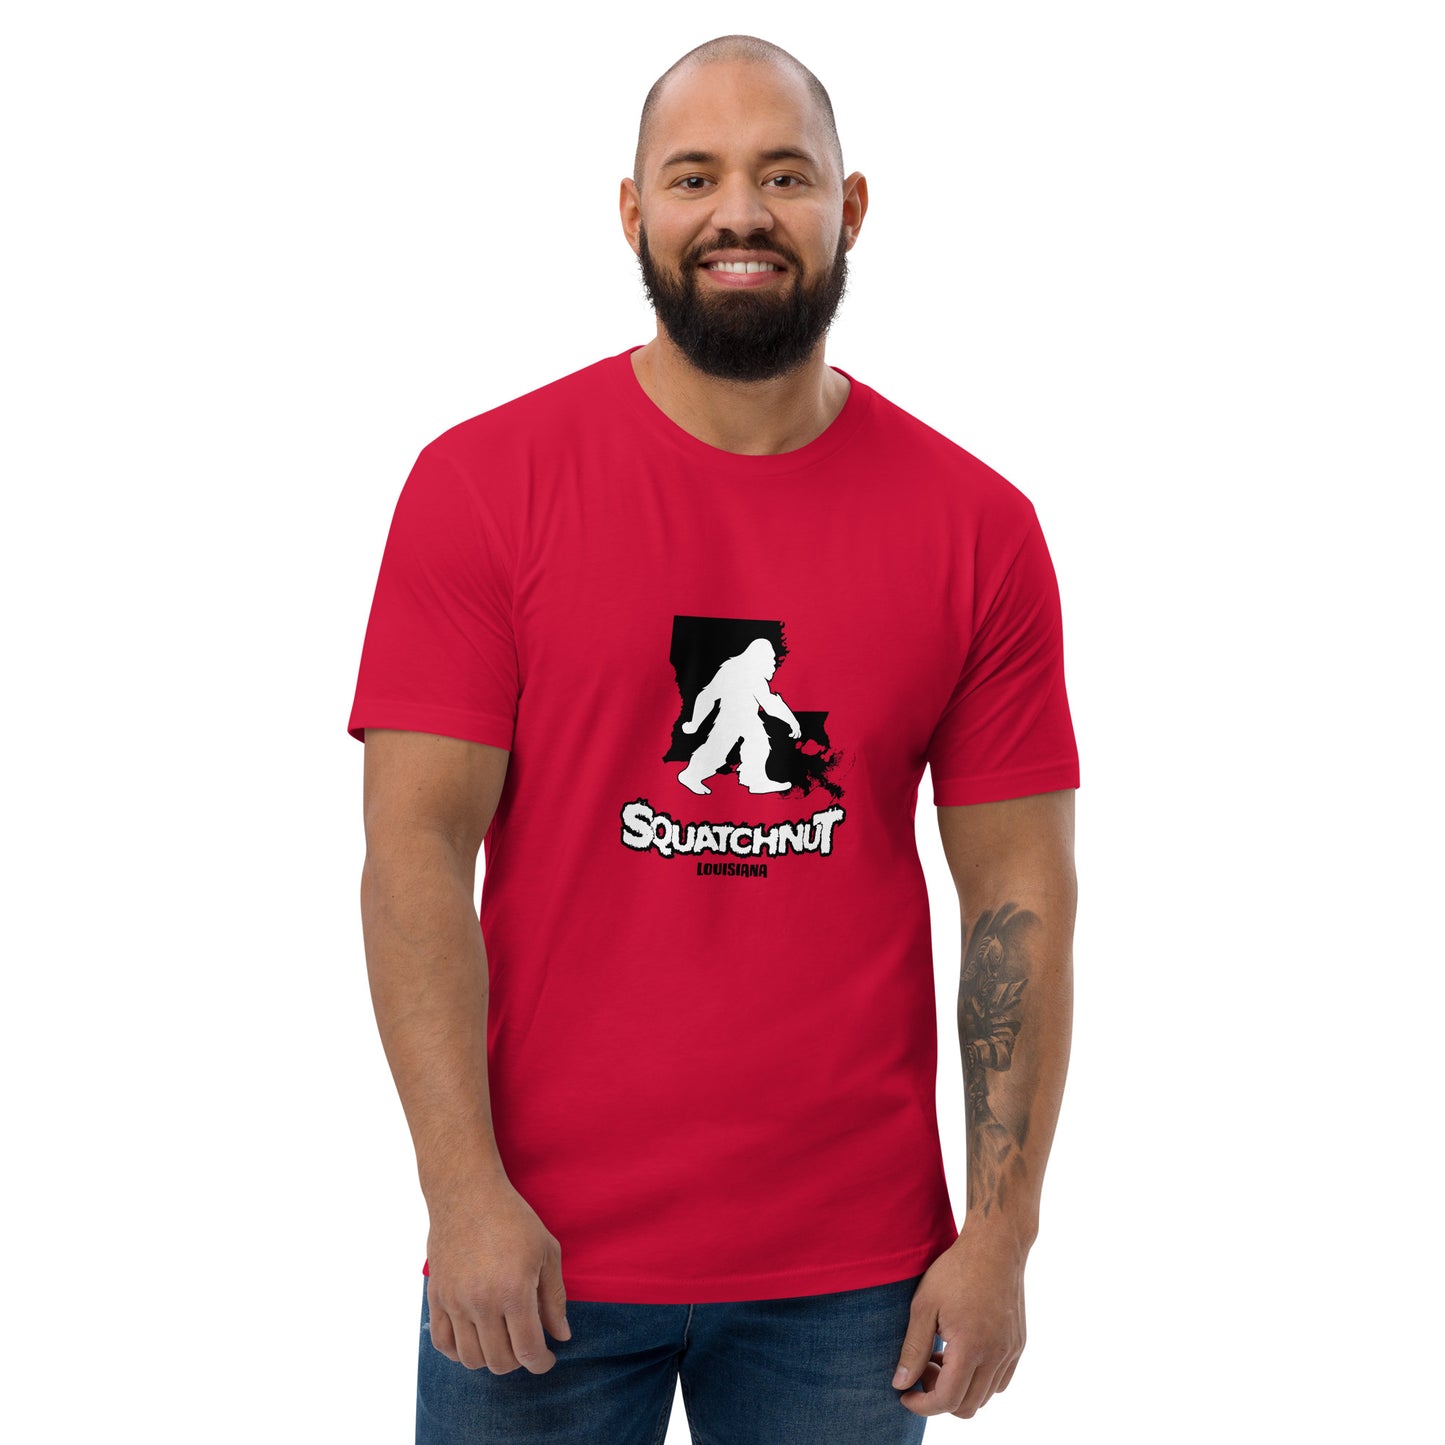 Louisiana Short Sleeve T-shirt